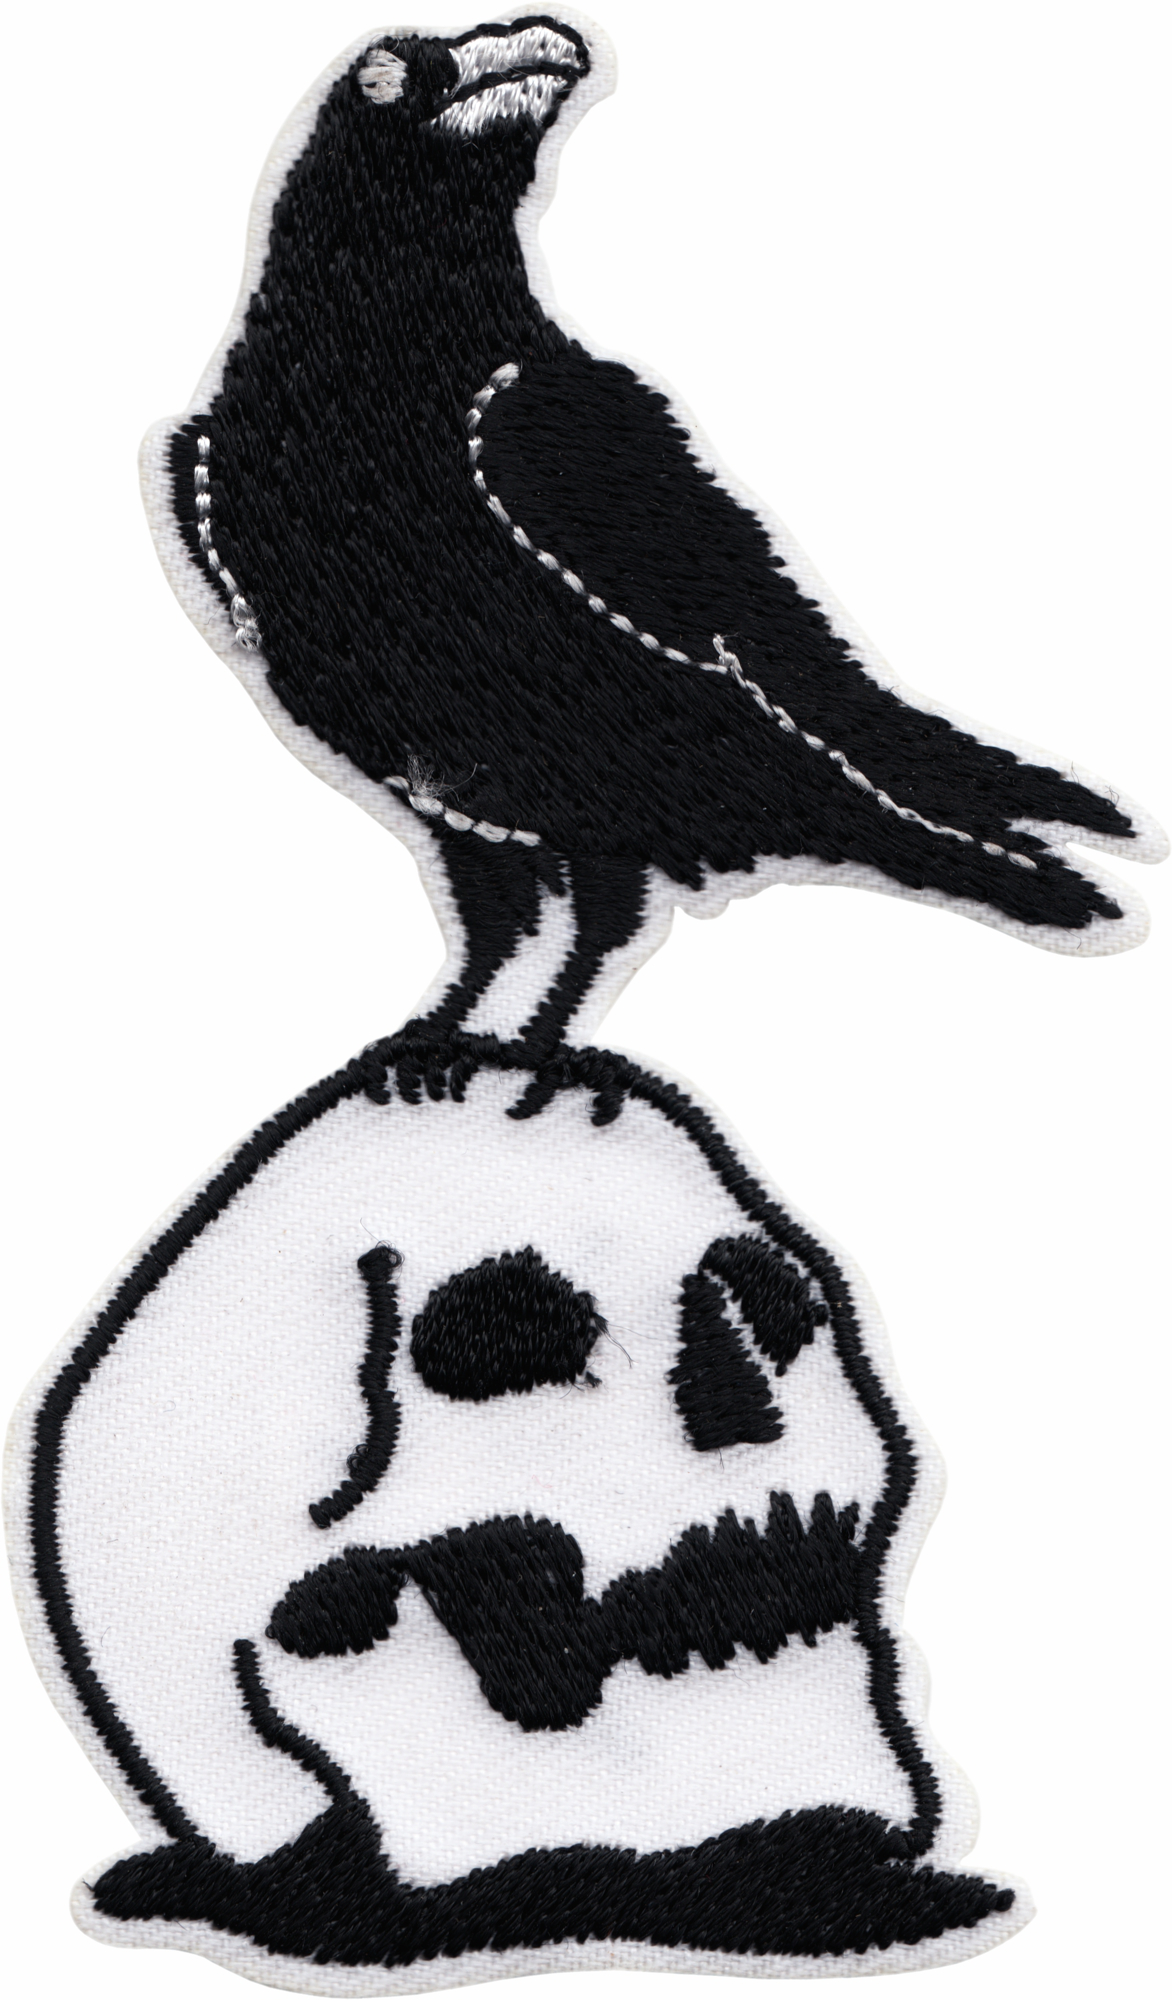 Patch - Raven Bird on Skull